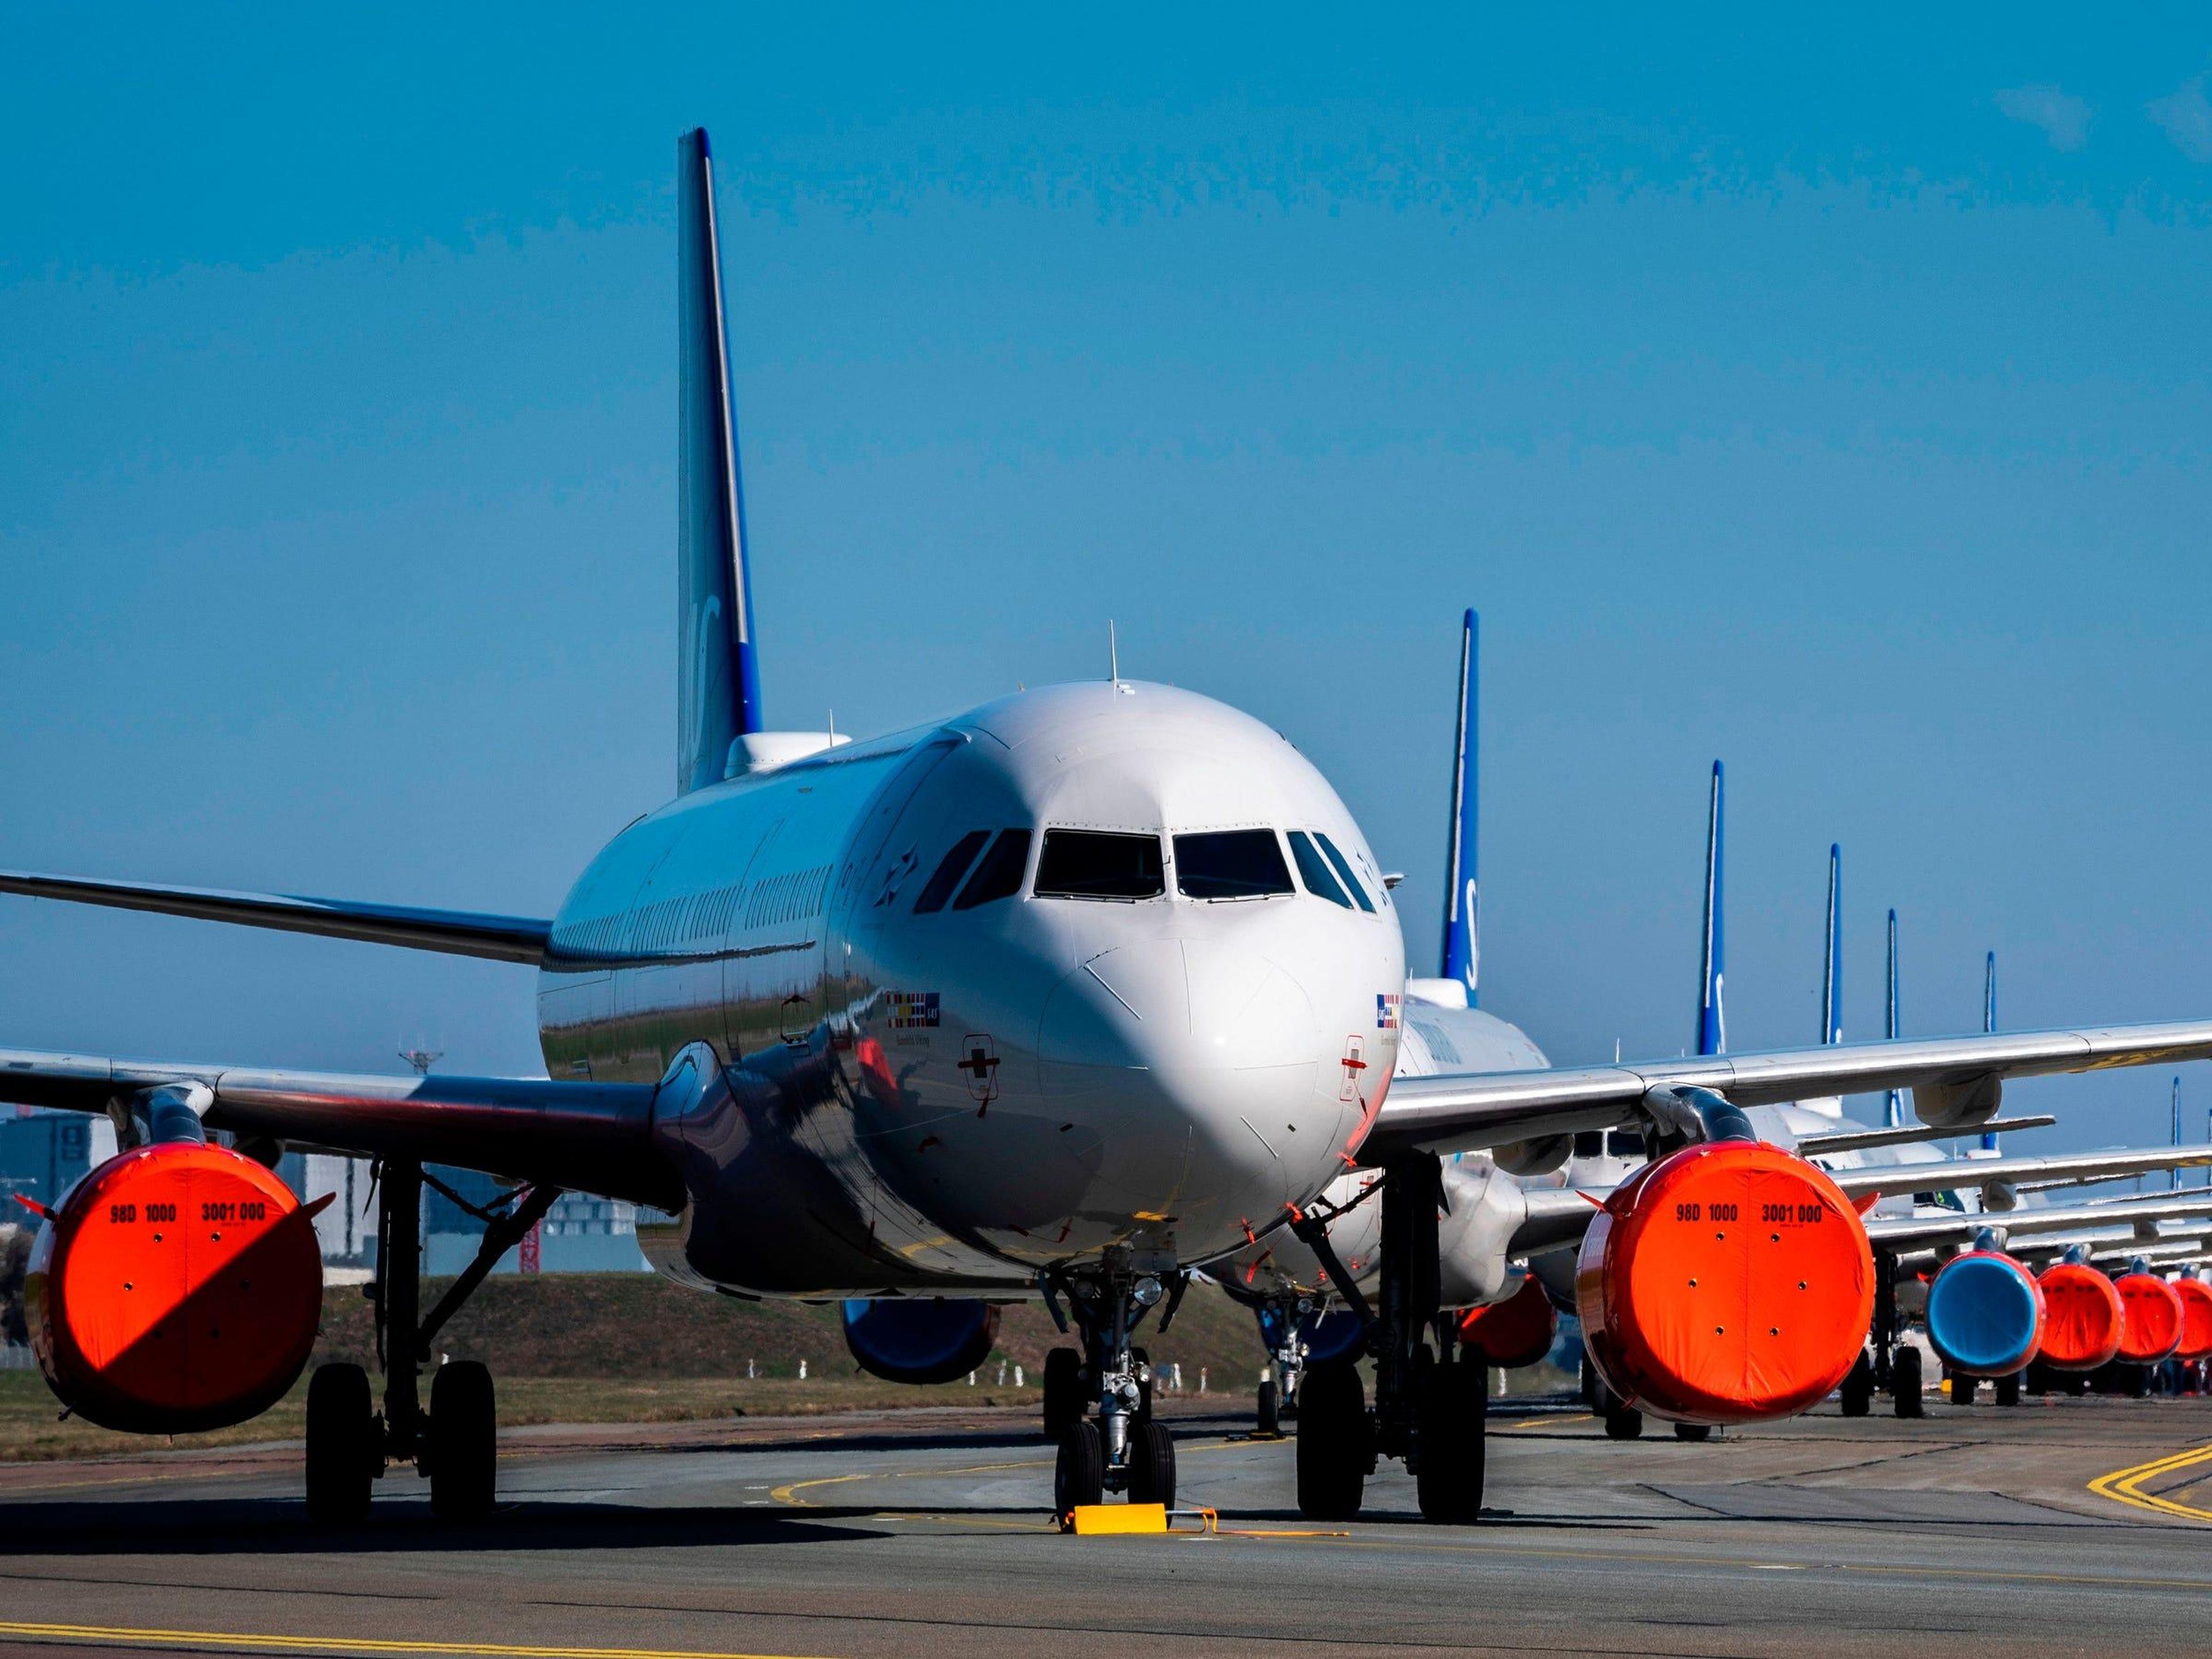 Aviones de pasajeros en tierra almacenados en los aeropuertos.